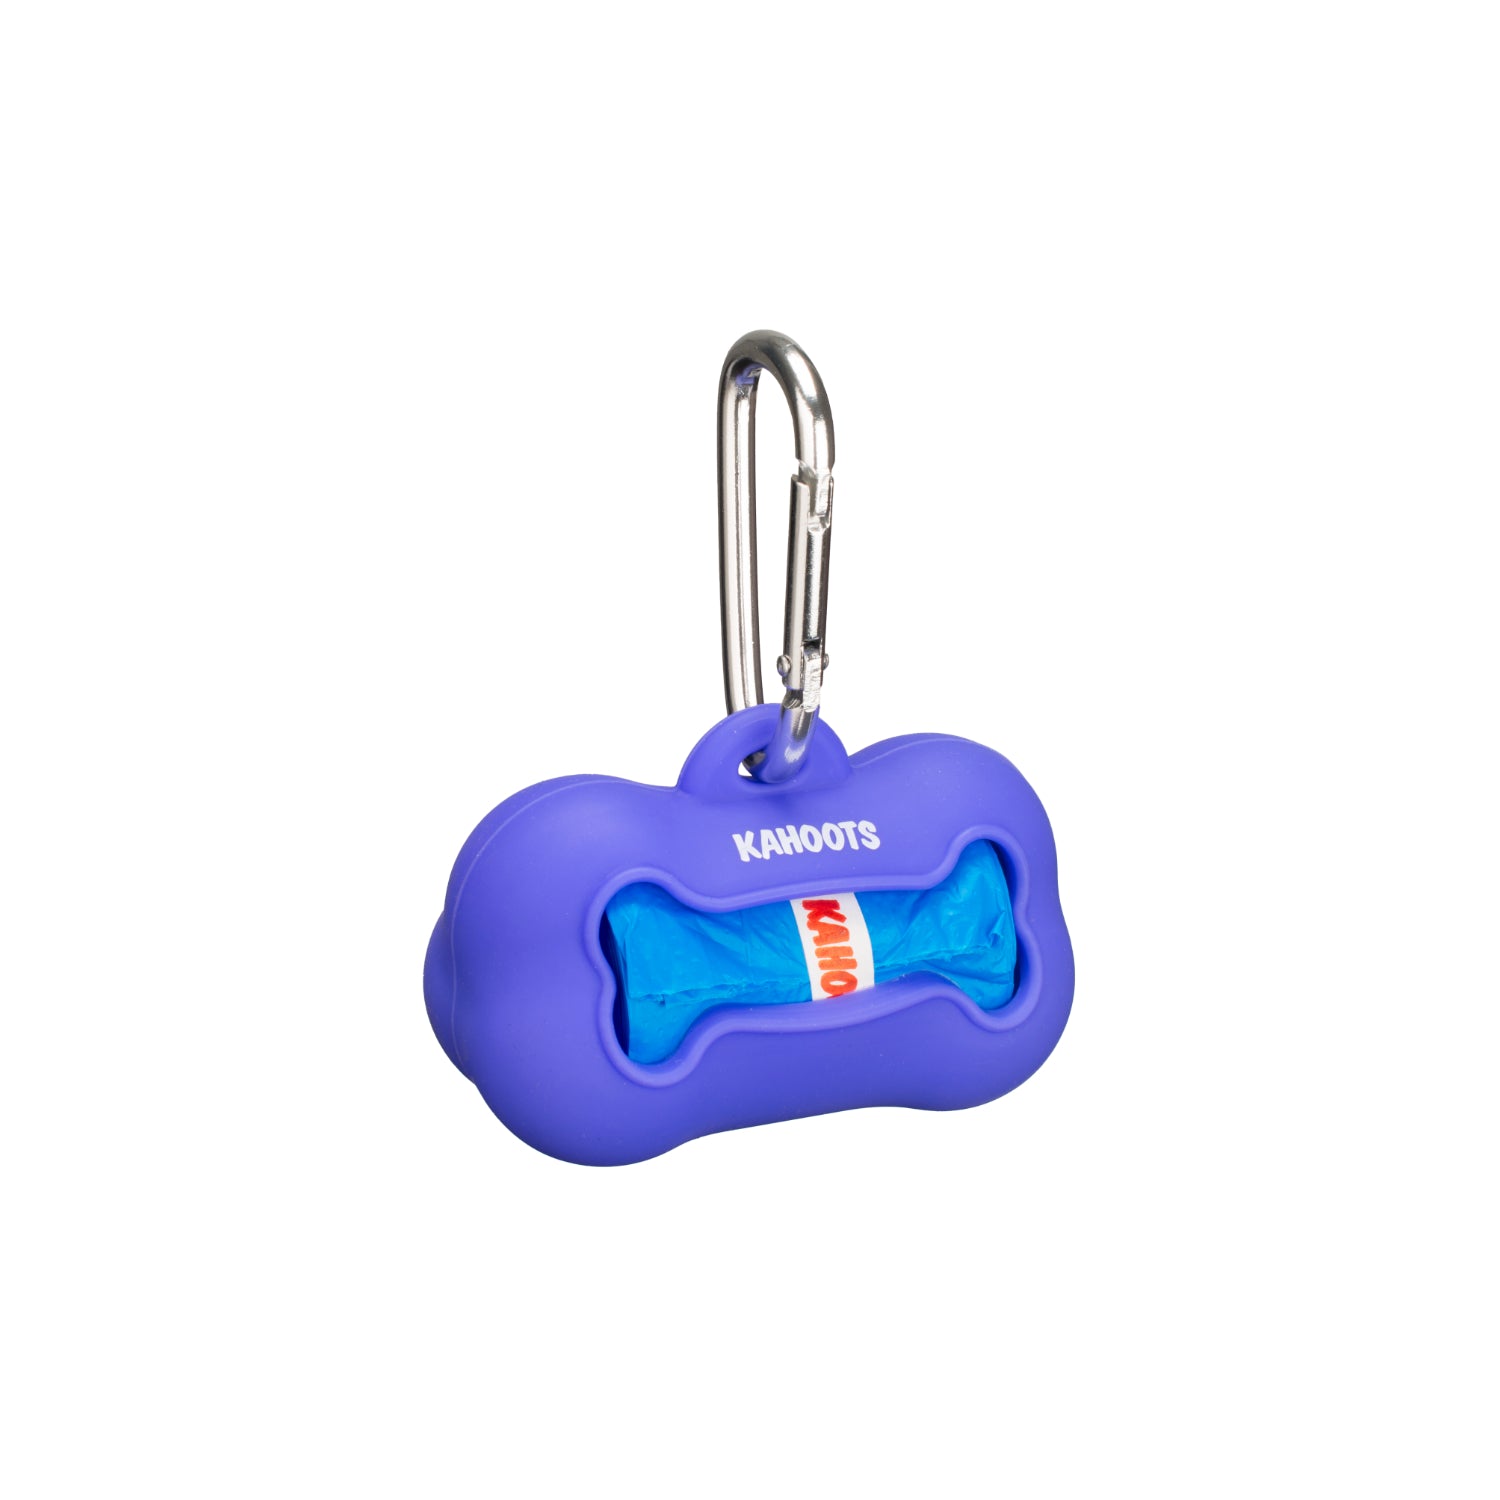 Purple doo bag holder, bone shaped, with blue doo bags inside